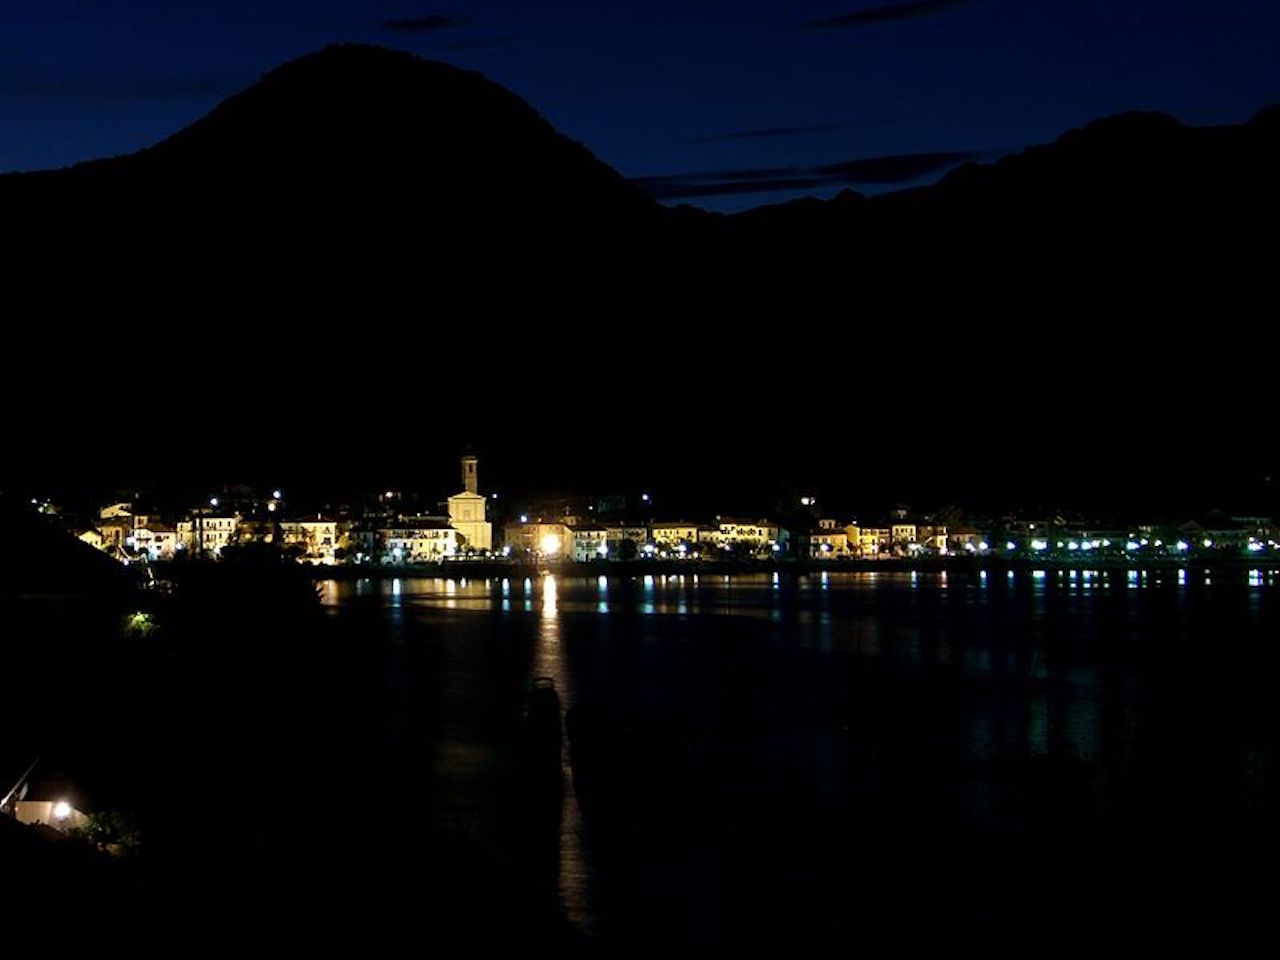 4Lago Maggiore at night photo Schwarzer Kater fonte wikimedia Fondazione CRT sostiene l’arte per 700mila euro. I vincitori del bando in 7 aree del Piemonte